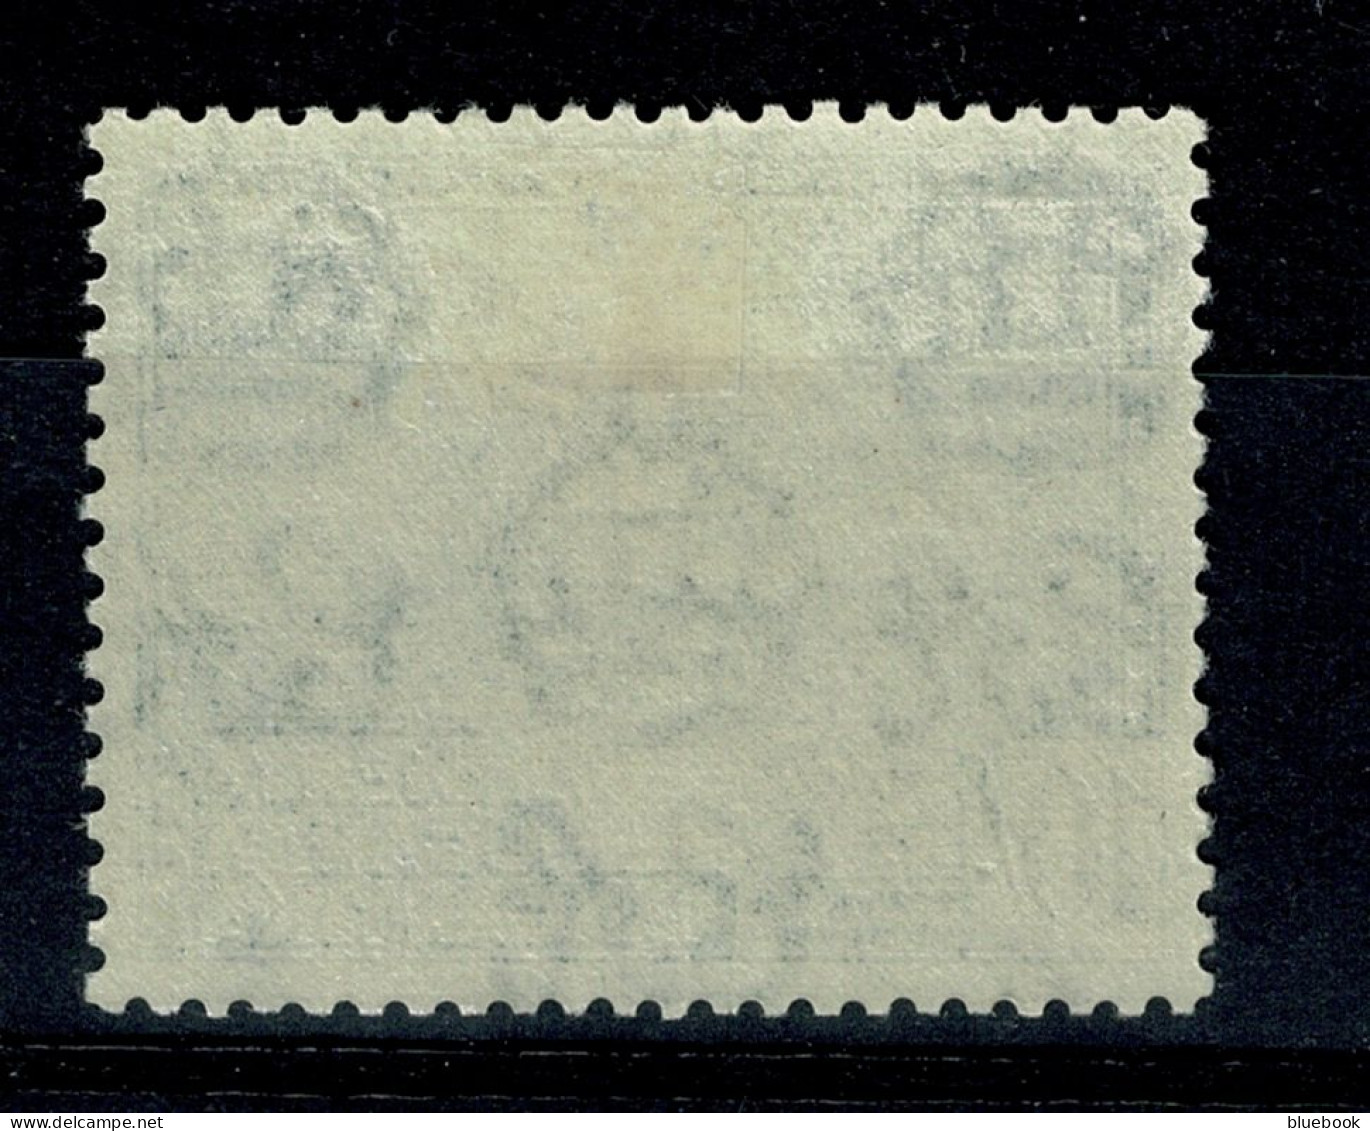 Ref 1640 - KUT Kenya Uganda & Tanganyka 1954 - 10/= Stamp - Royal Lodge - Lightly Mounted Mint SG 179 - Kenya, Uganda & Tanganyika